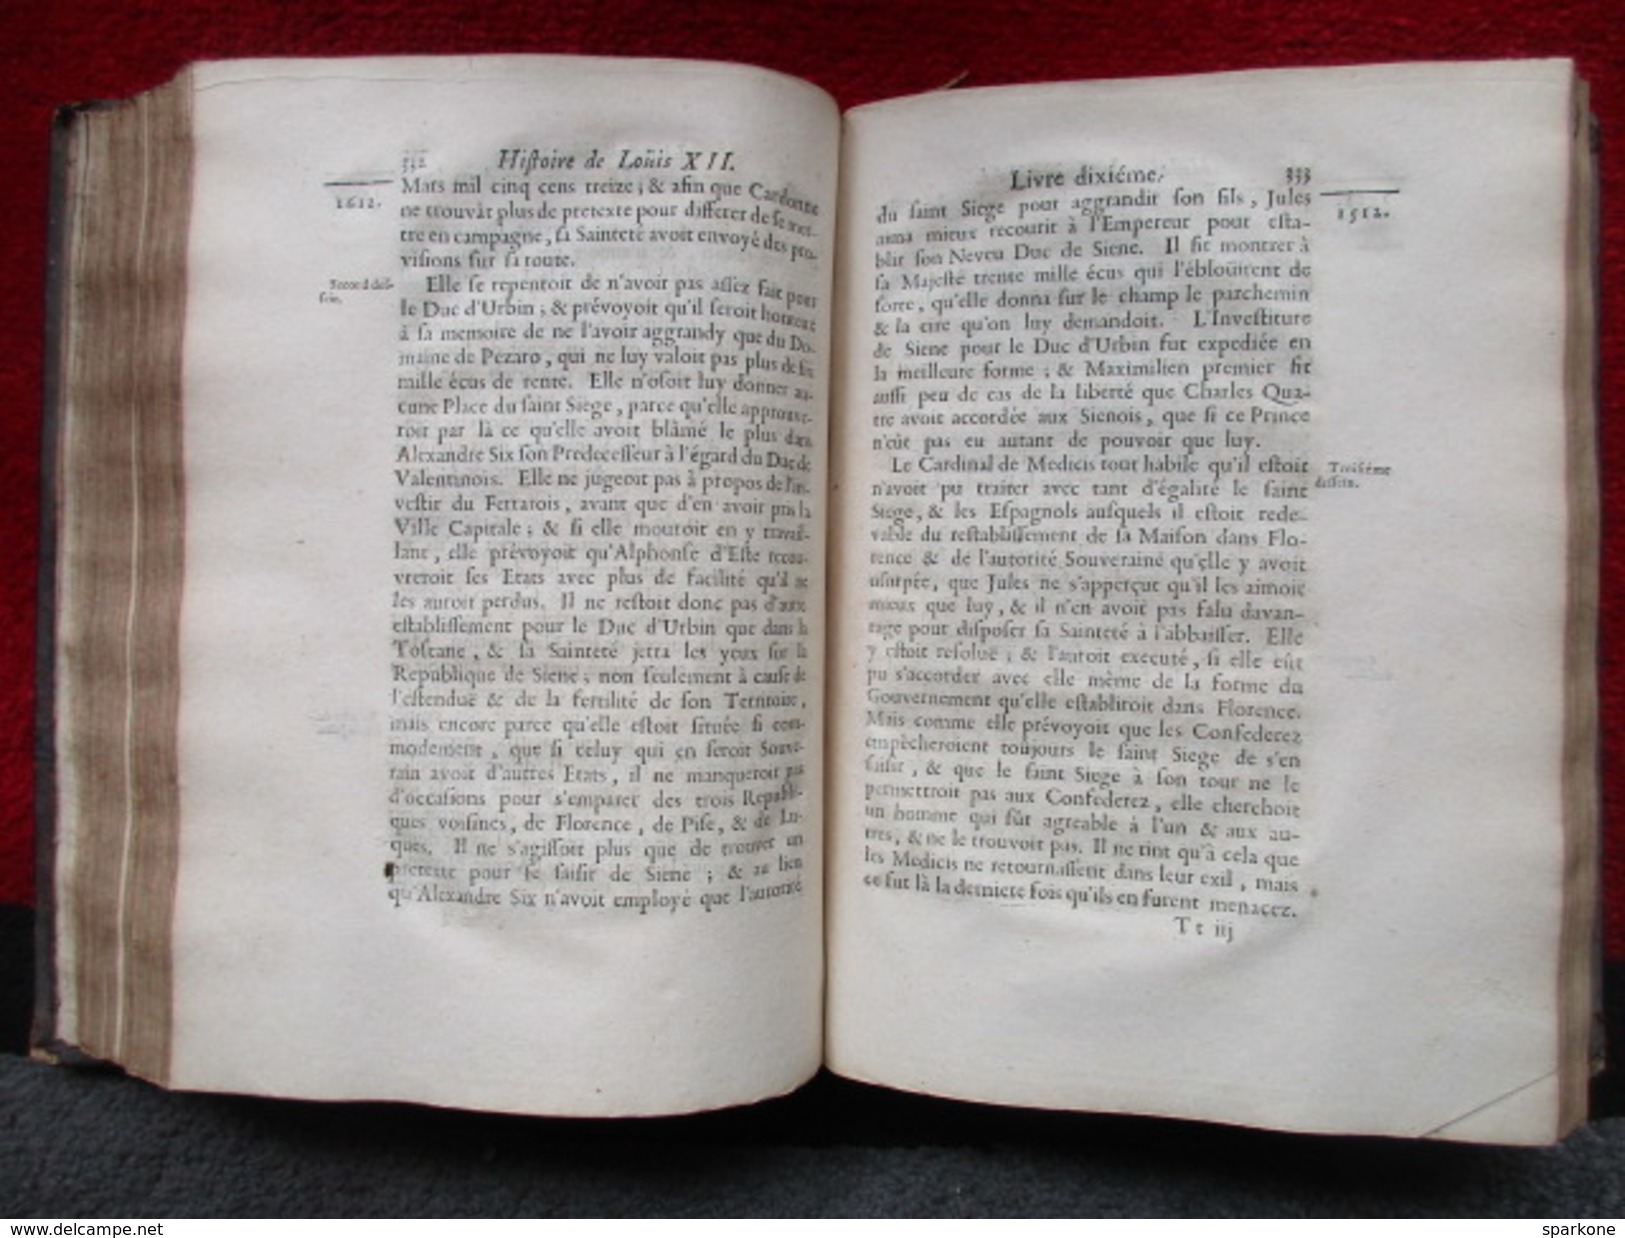 Histoire de Louis XII "Tome 3" (Monsieur Varillas) éditions Claude Barbin de 1688